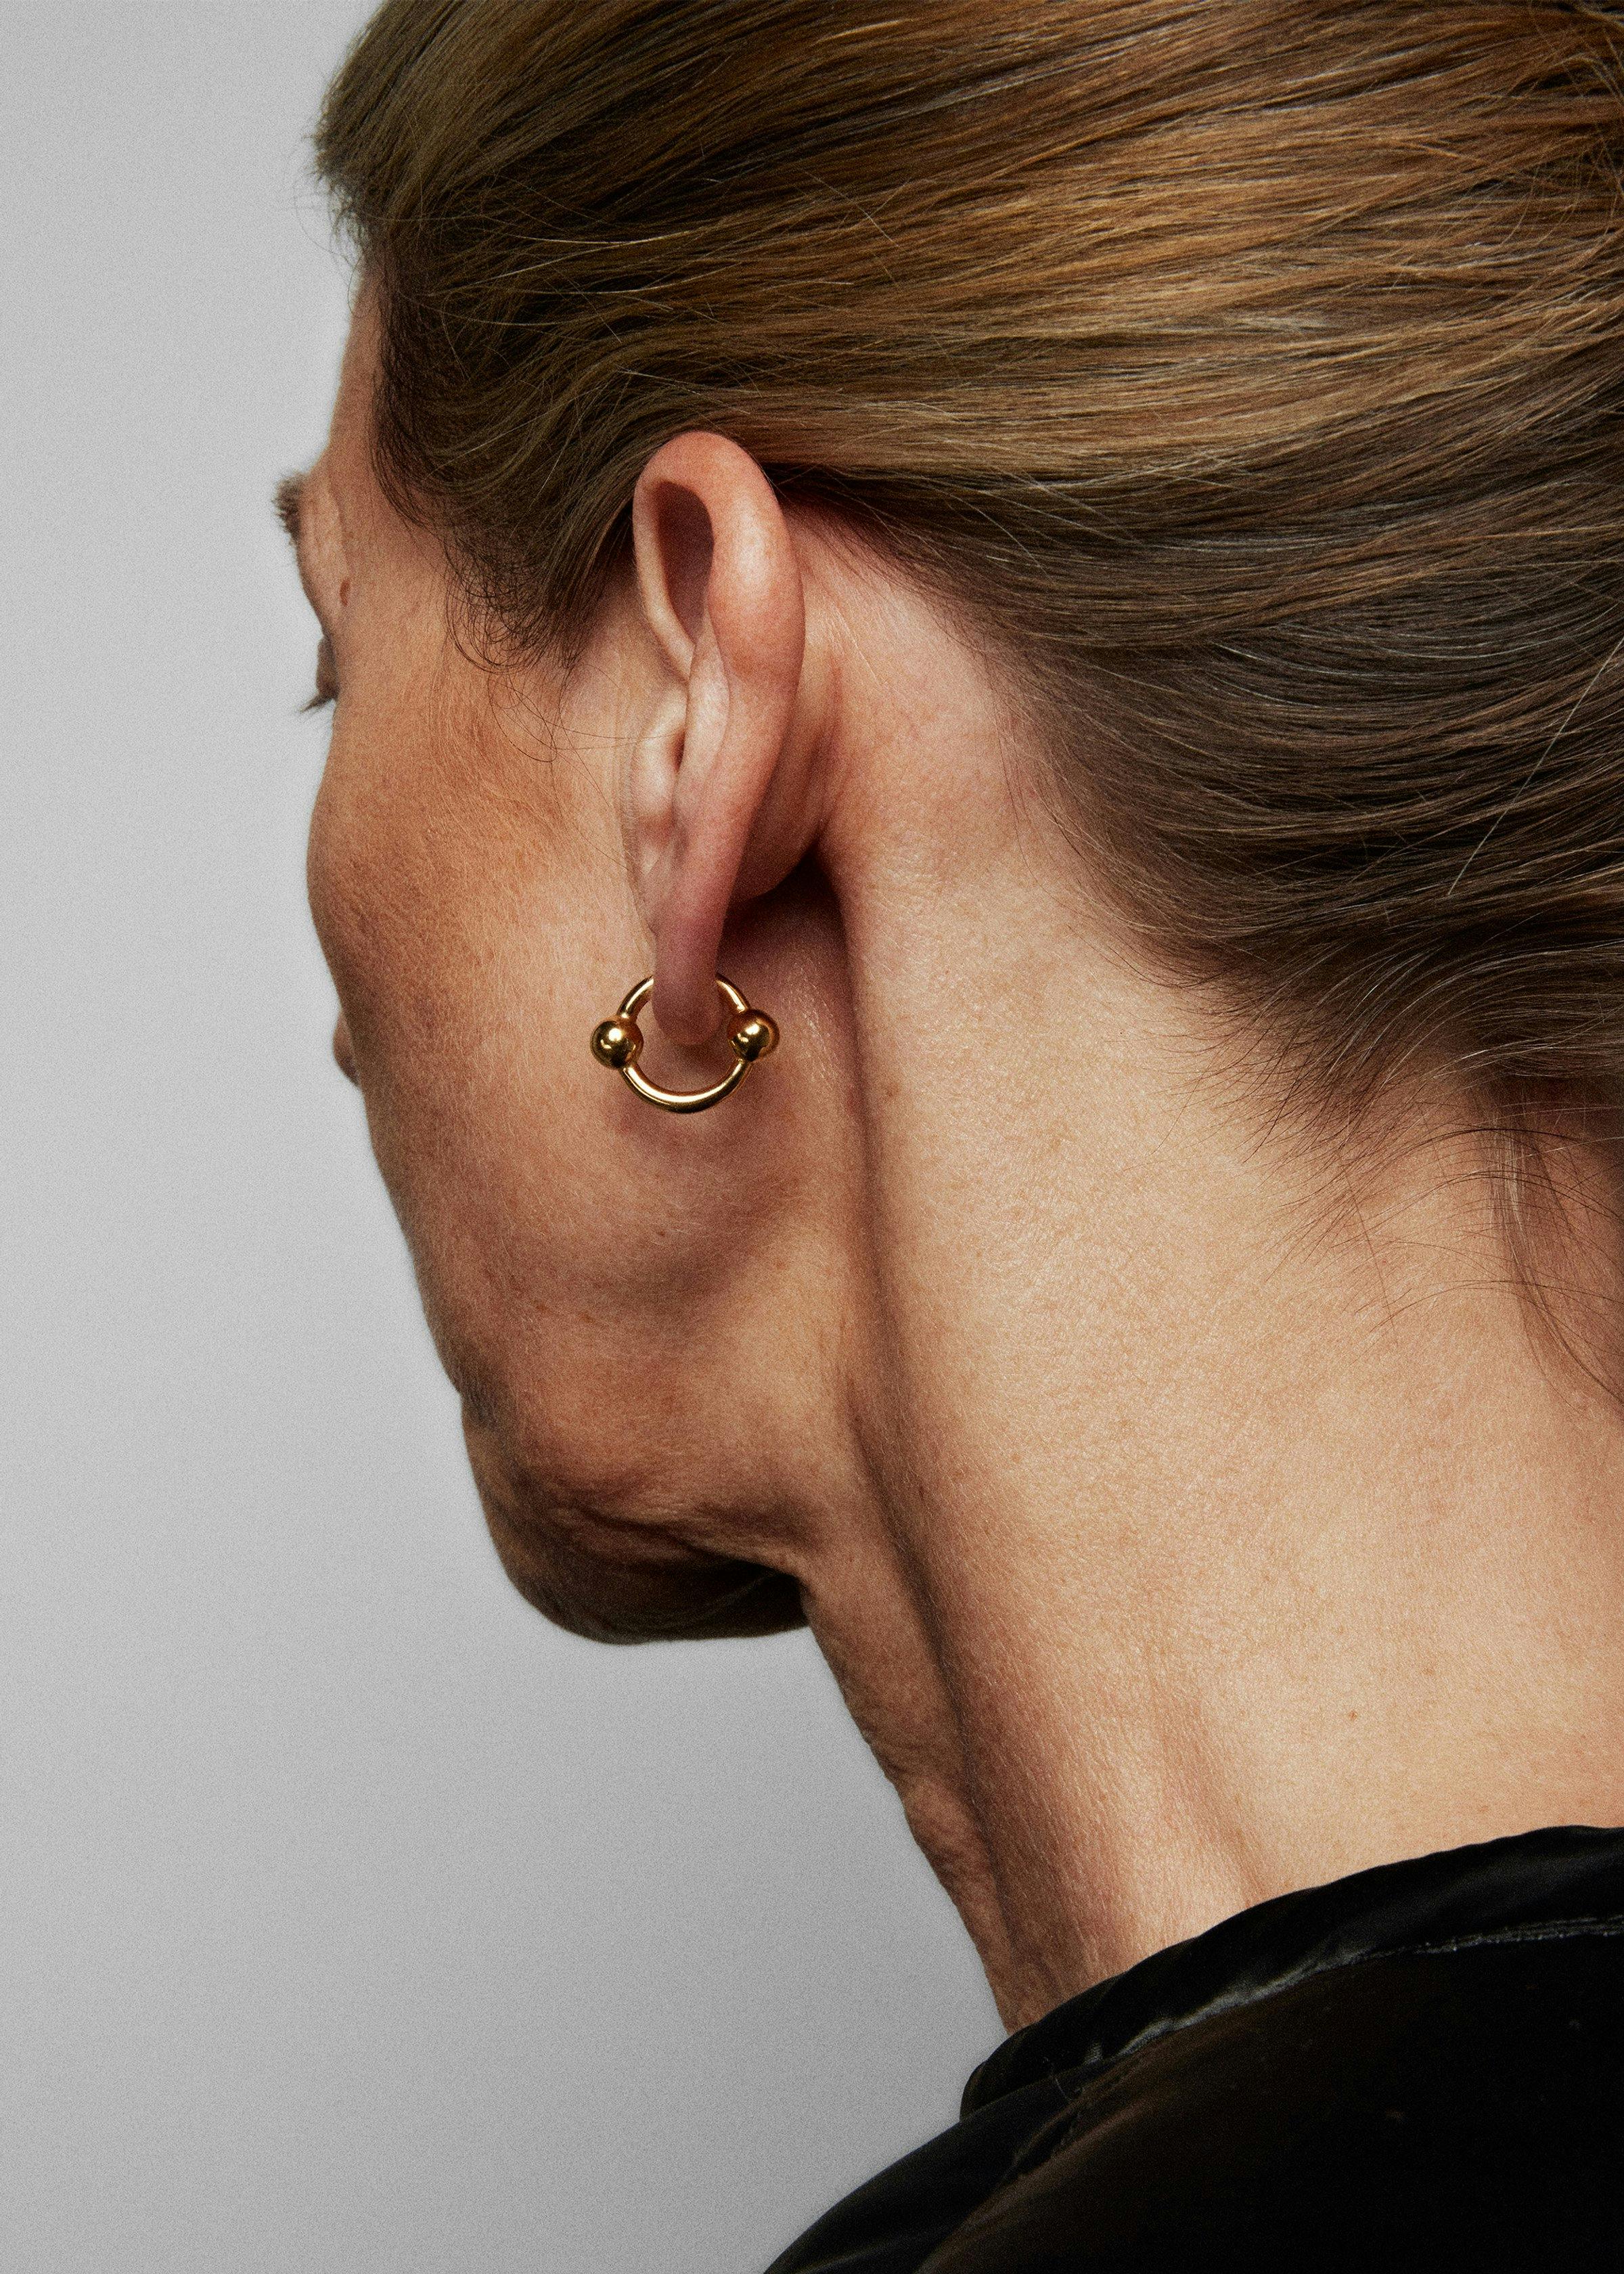 Orbit earrings